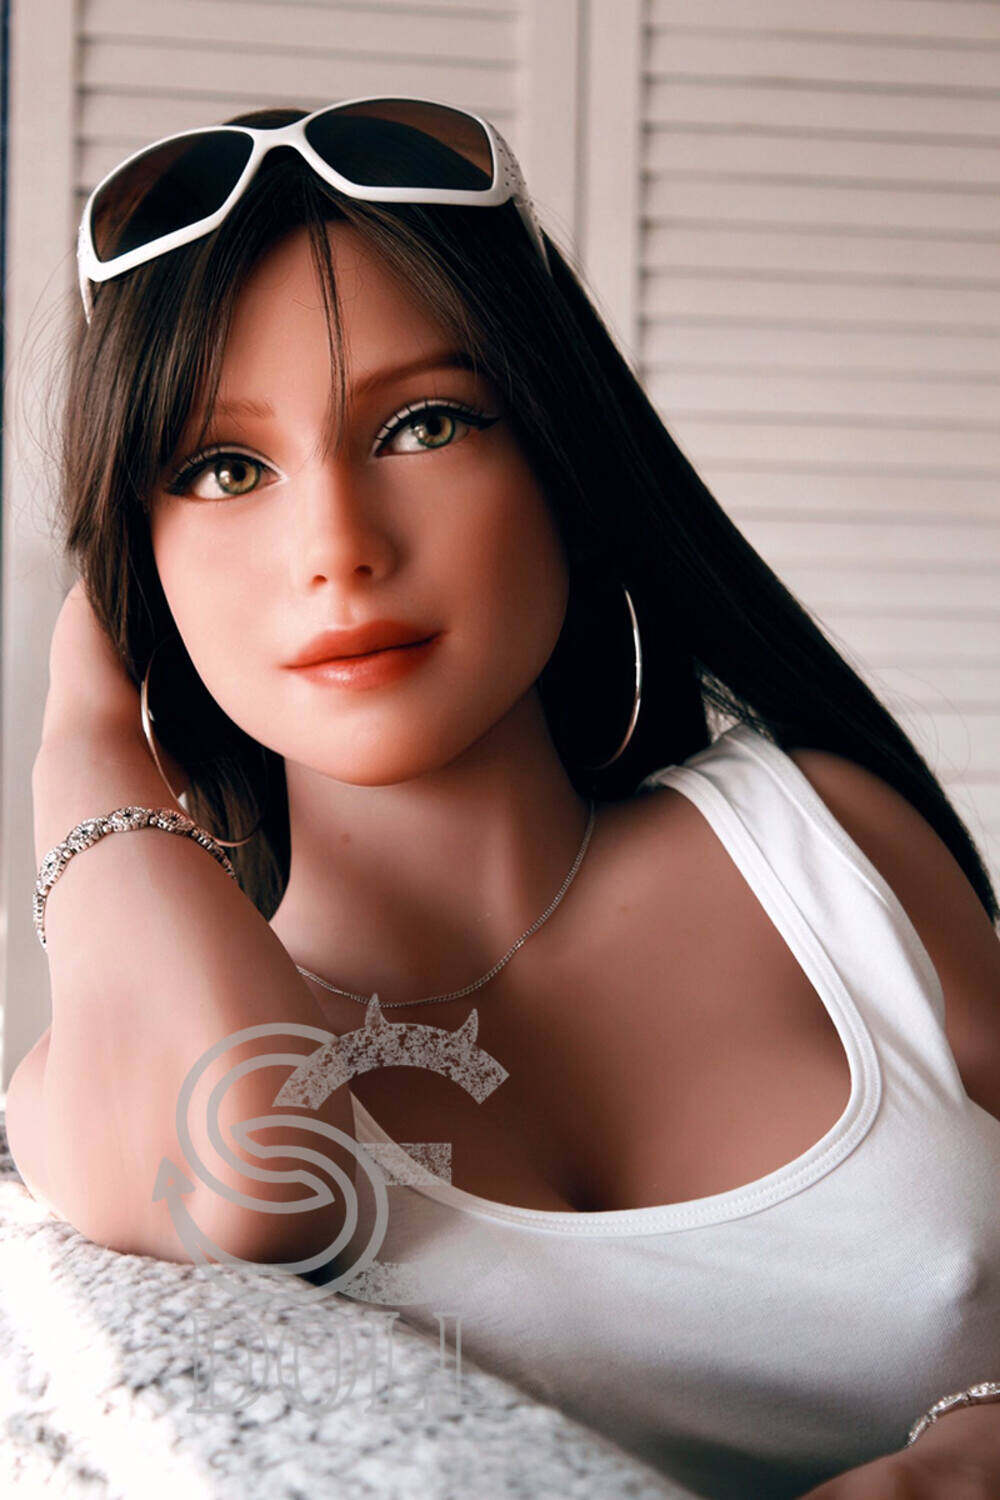 Blostm - Big Boob Sex Doll SE 161cm(5ft3) Love Dolls image3